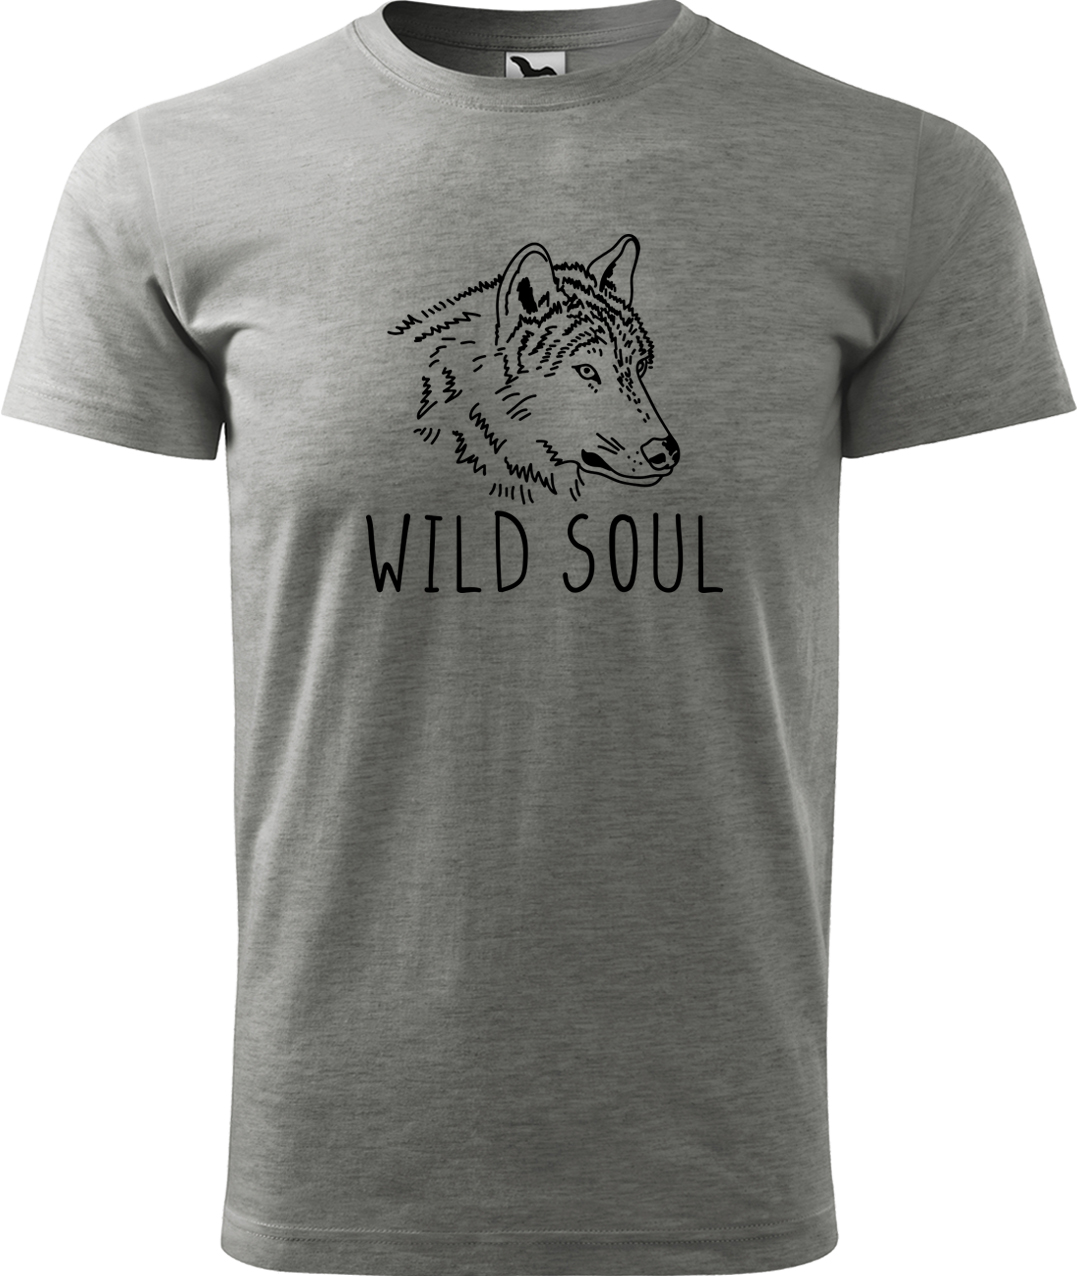 Pánské tričko s vlkem - Wild soul Velikost: 4XL, Barva: Tmavě šedý melír (12), Střih: pánský